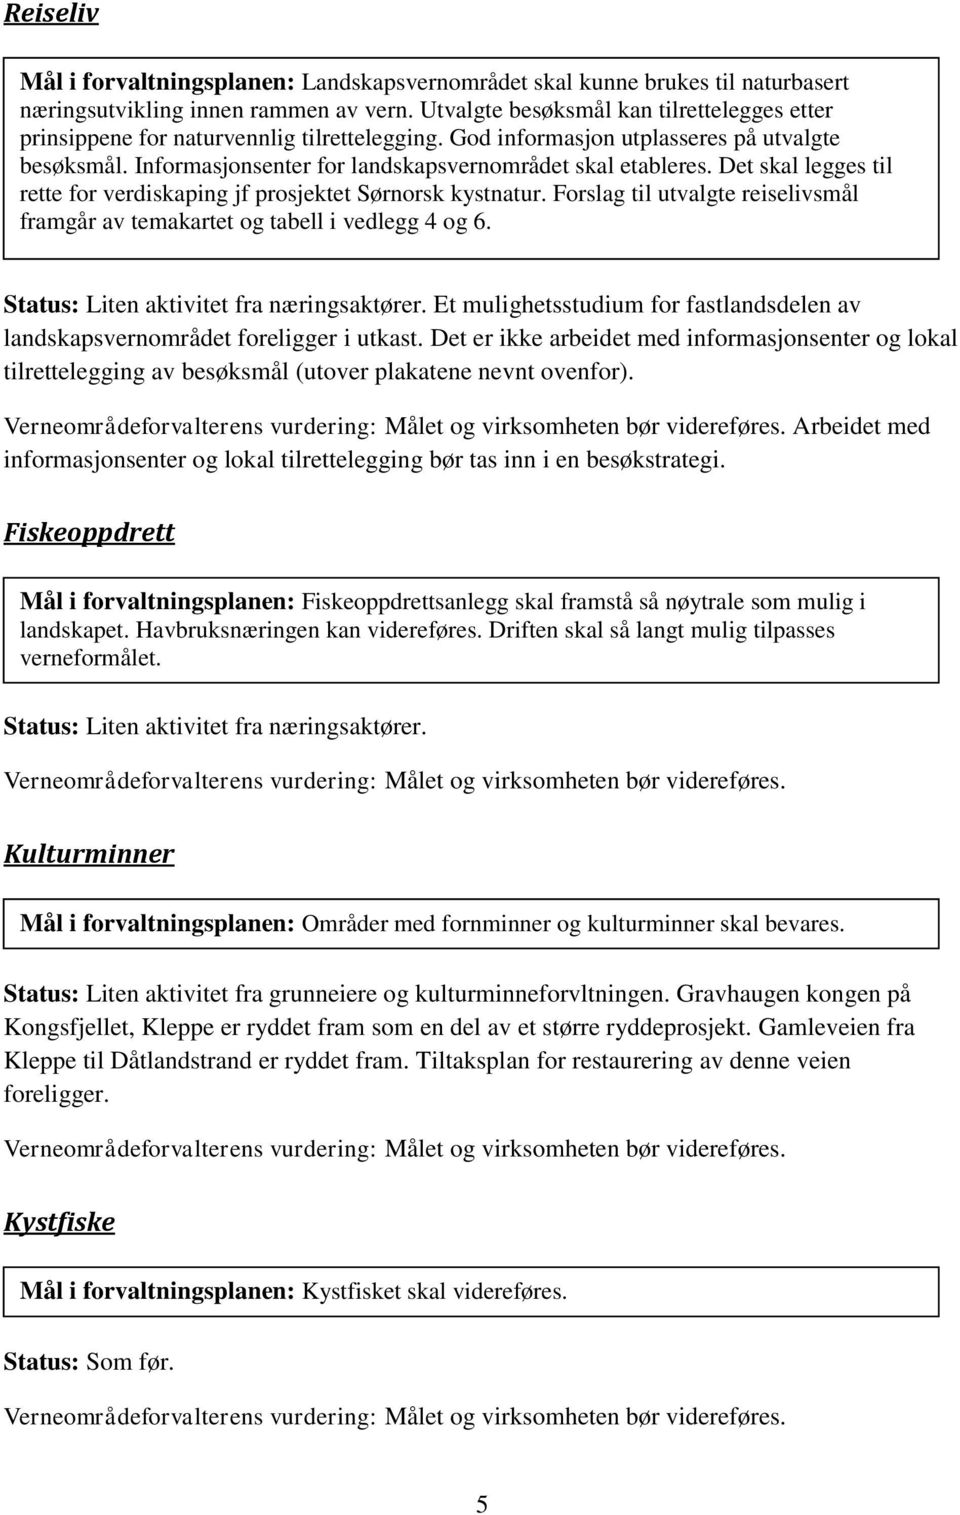 Det skal legges til rette for verdiskaping jf prosjektet Sørnorsk kystnatur. Forslag til utvalgte reiselivsmål framgår av temakartet og tabell i vedlegg 4 og 6.